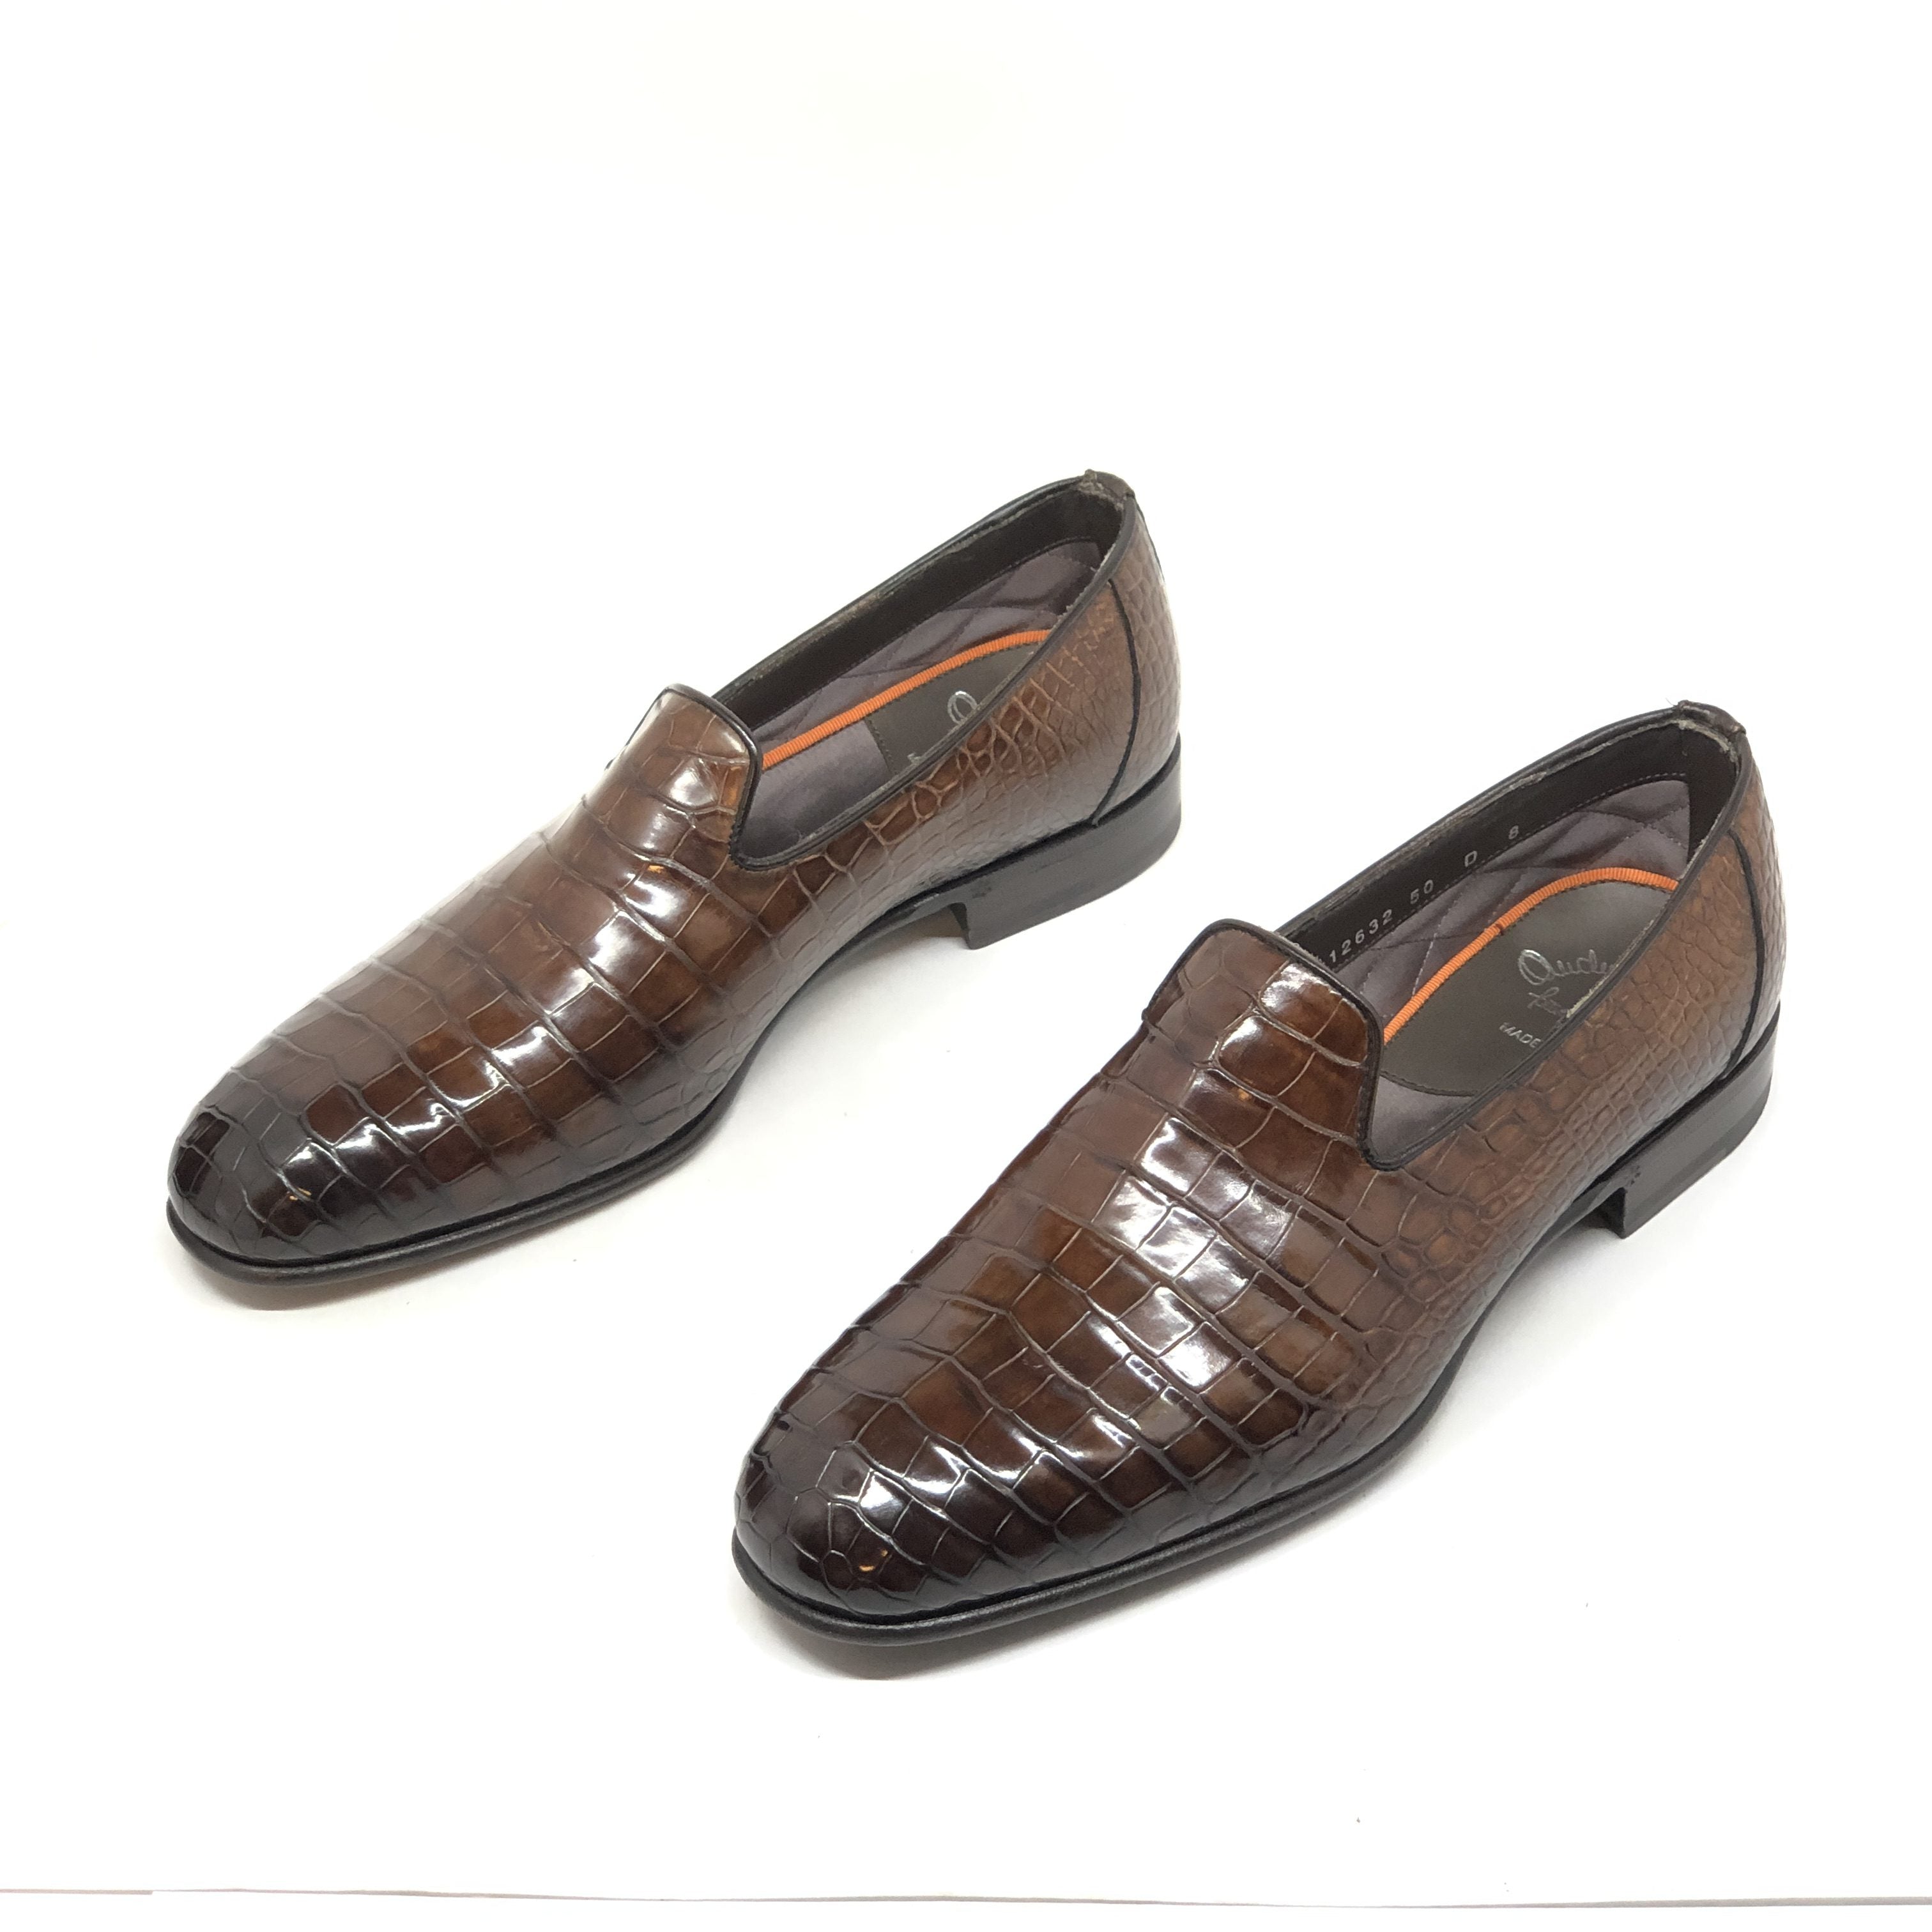 Santoni Men's Limited Edition Crocodile Leather Shoes